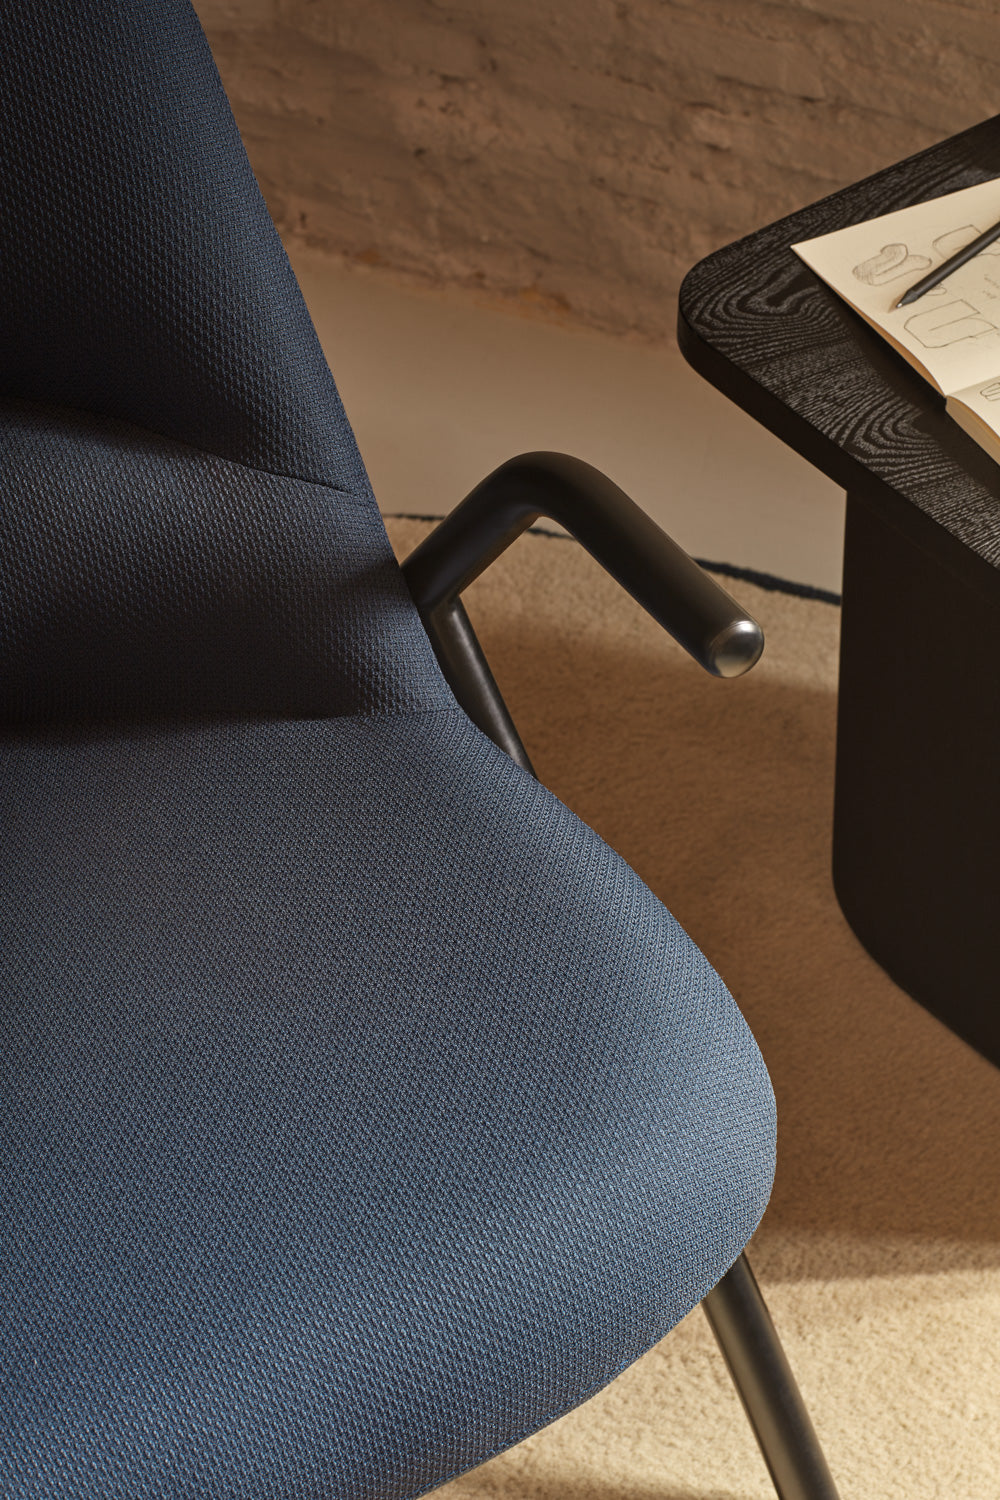 DINS-Sessel mit hoher Rückenlehne, dunkelblau